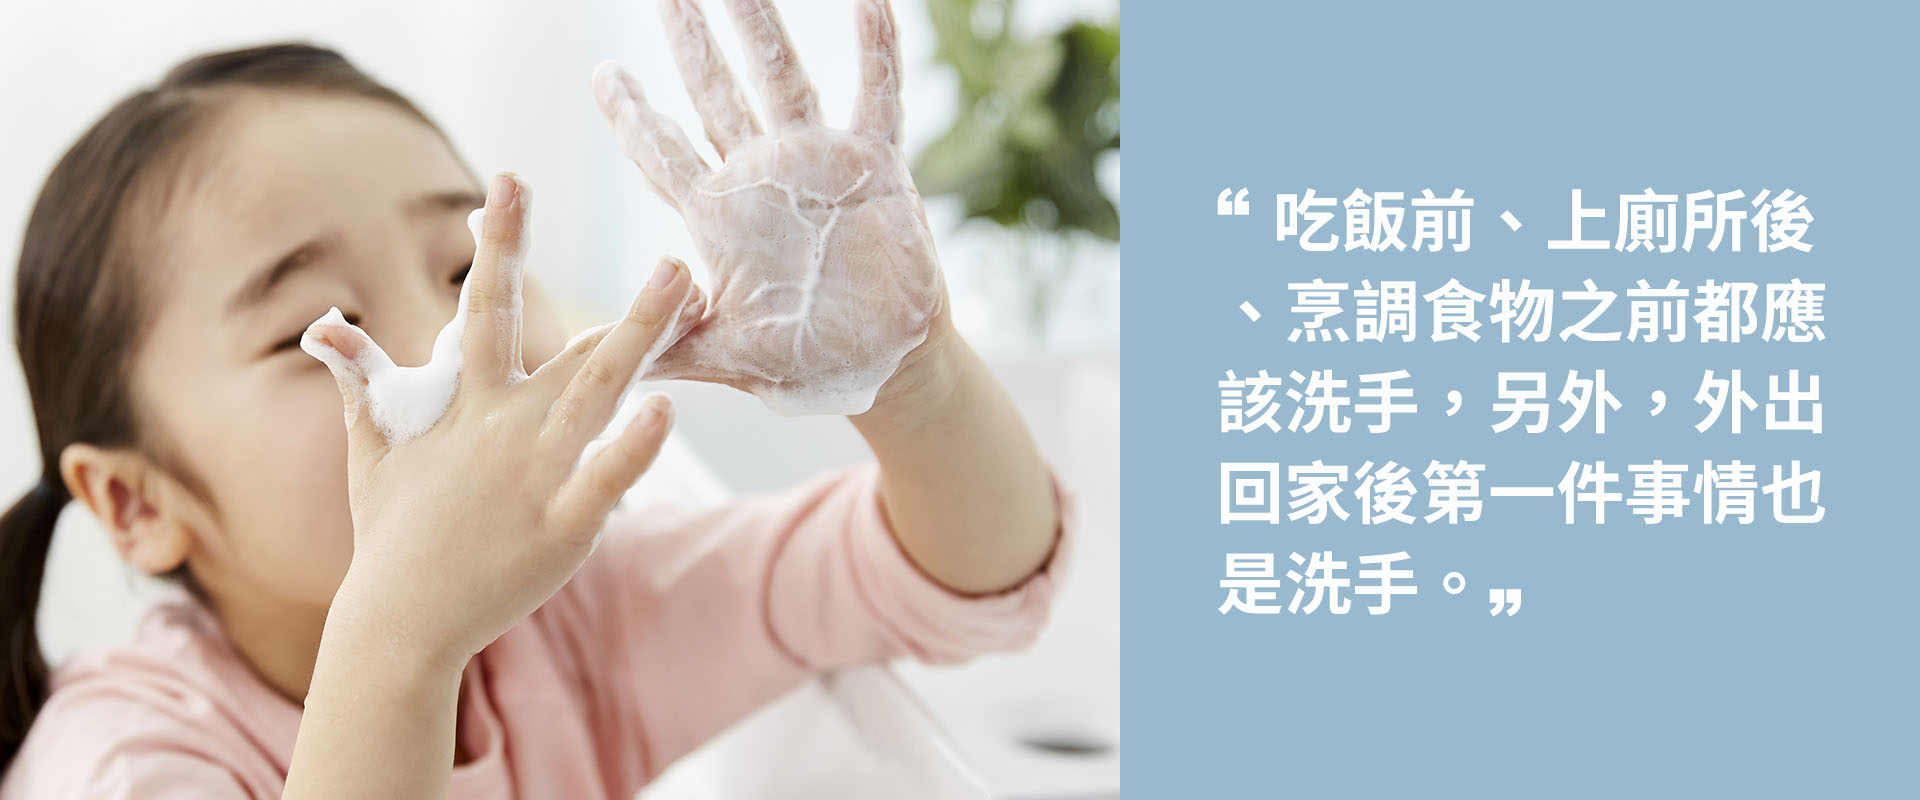 只要做到經常洗手就可以降低感染的機會